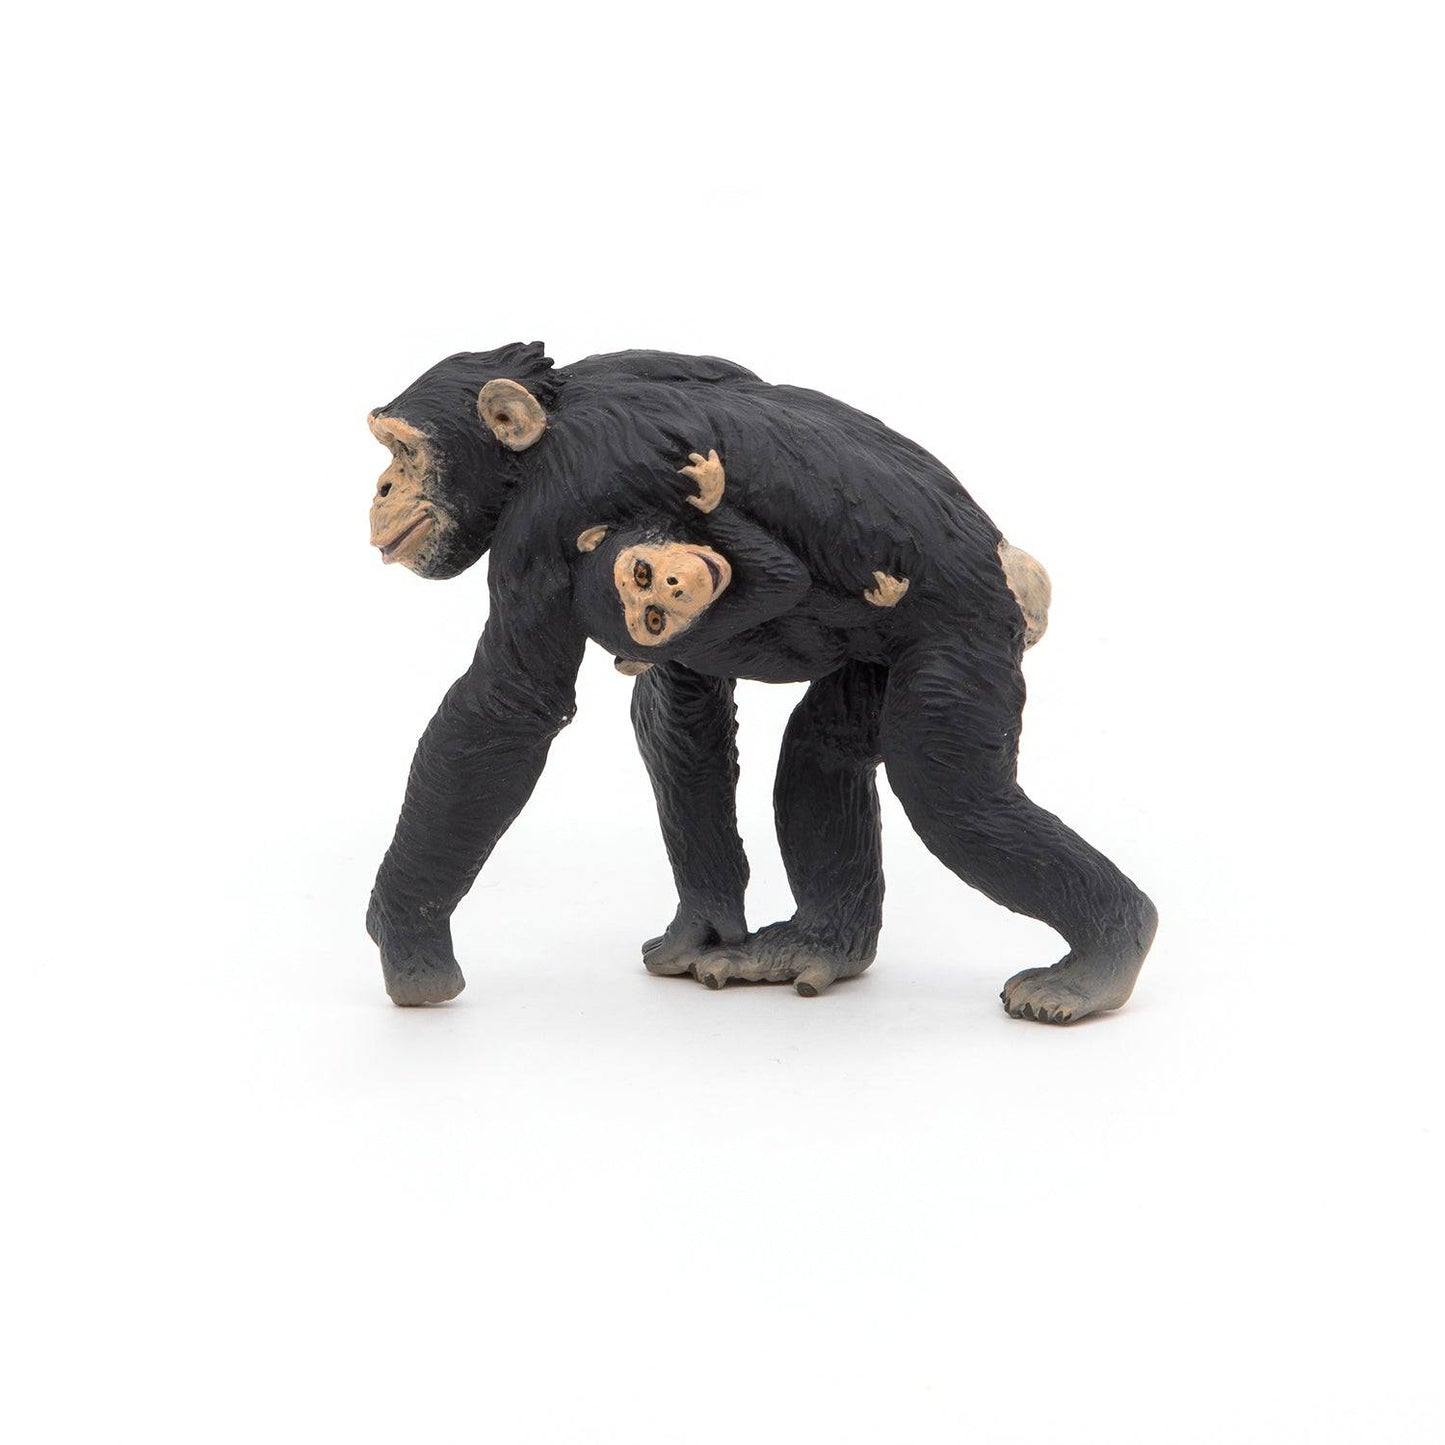 Figurine maman chimpanzé avec son bébé - Maison Continuum